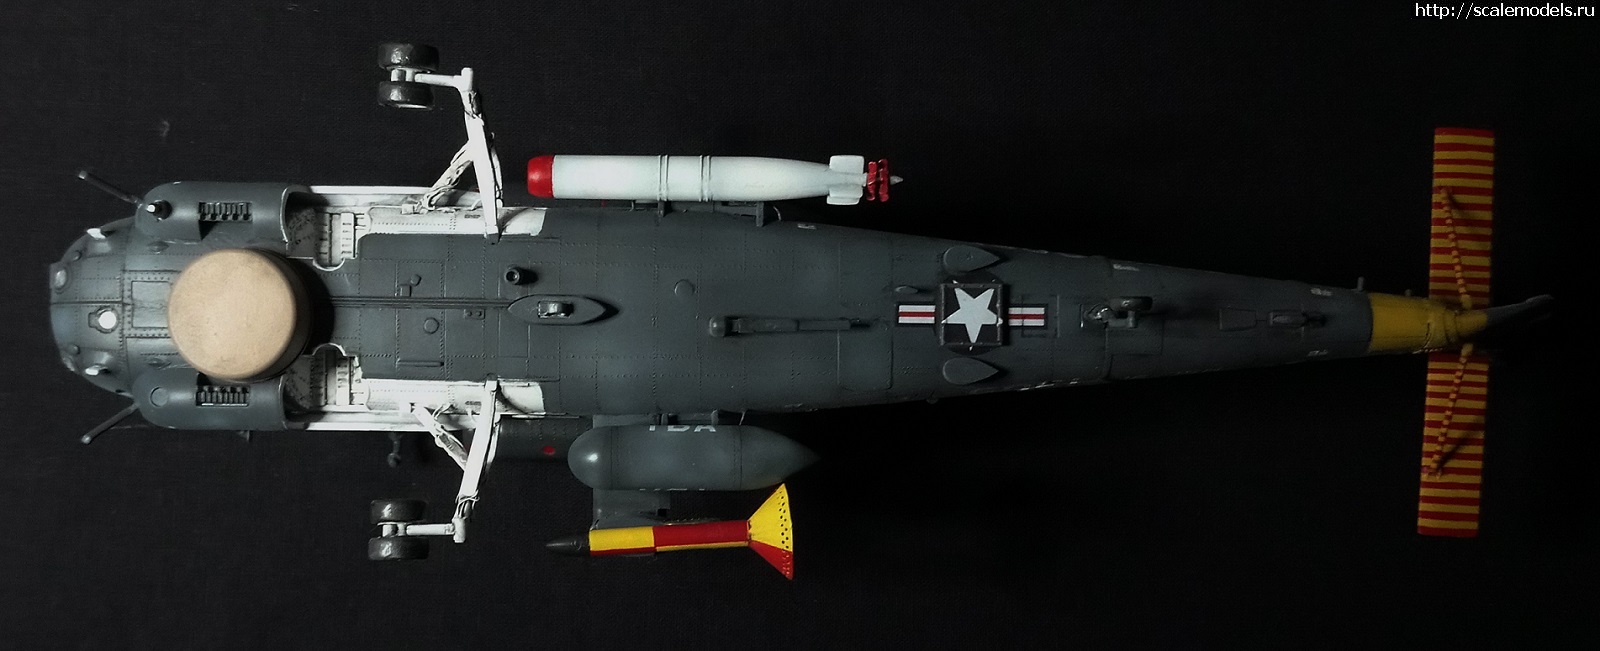 #1736607/ SH-2F Seasprite 1/48 Kitty Hawk ()  